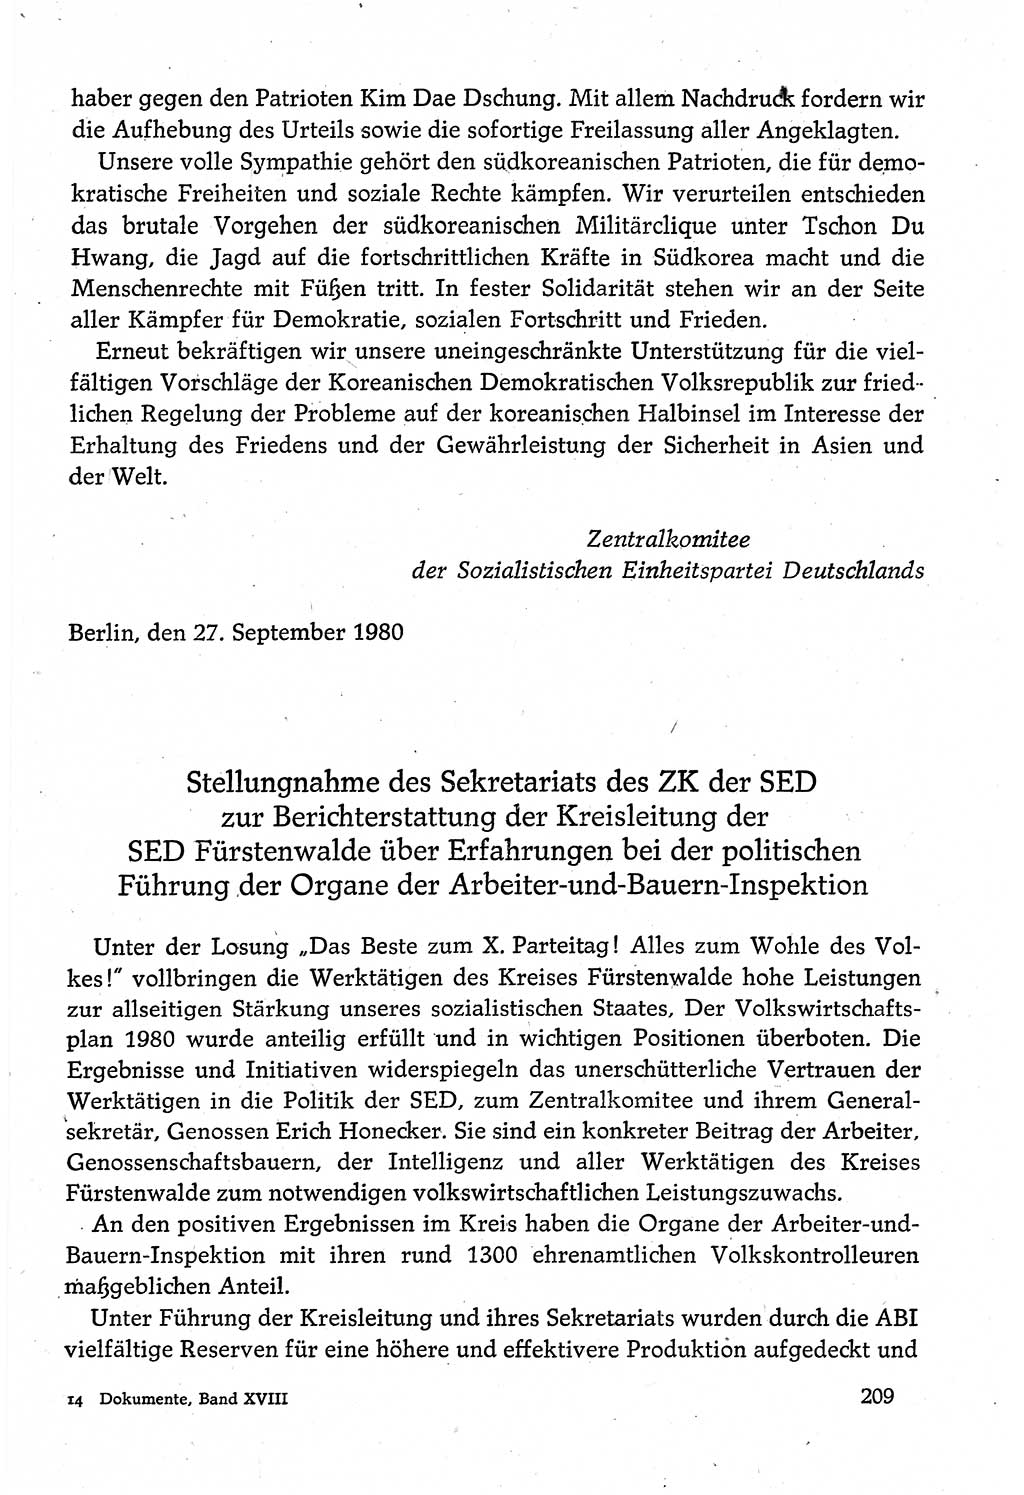 Dokumente der Sozialistischen Einheitspartei Deutschlands (SED) [Deutsche Demokratische Republik (DDR)] 1980-1981, Seite 209 (Dok. SED DDR 1980-1981, S. 209)